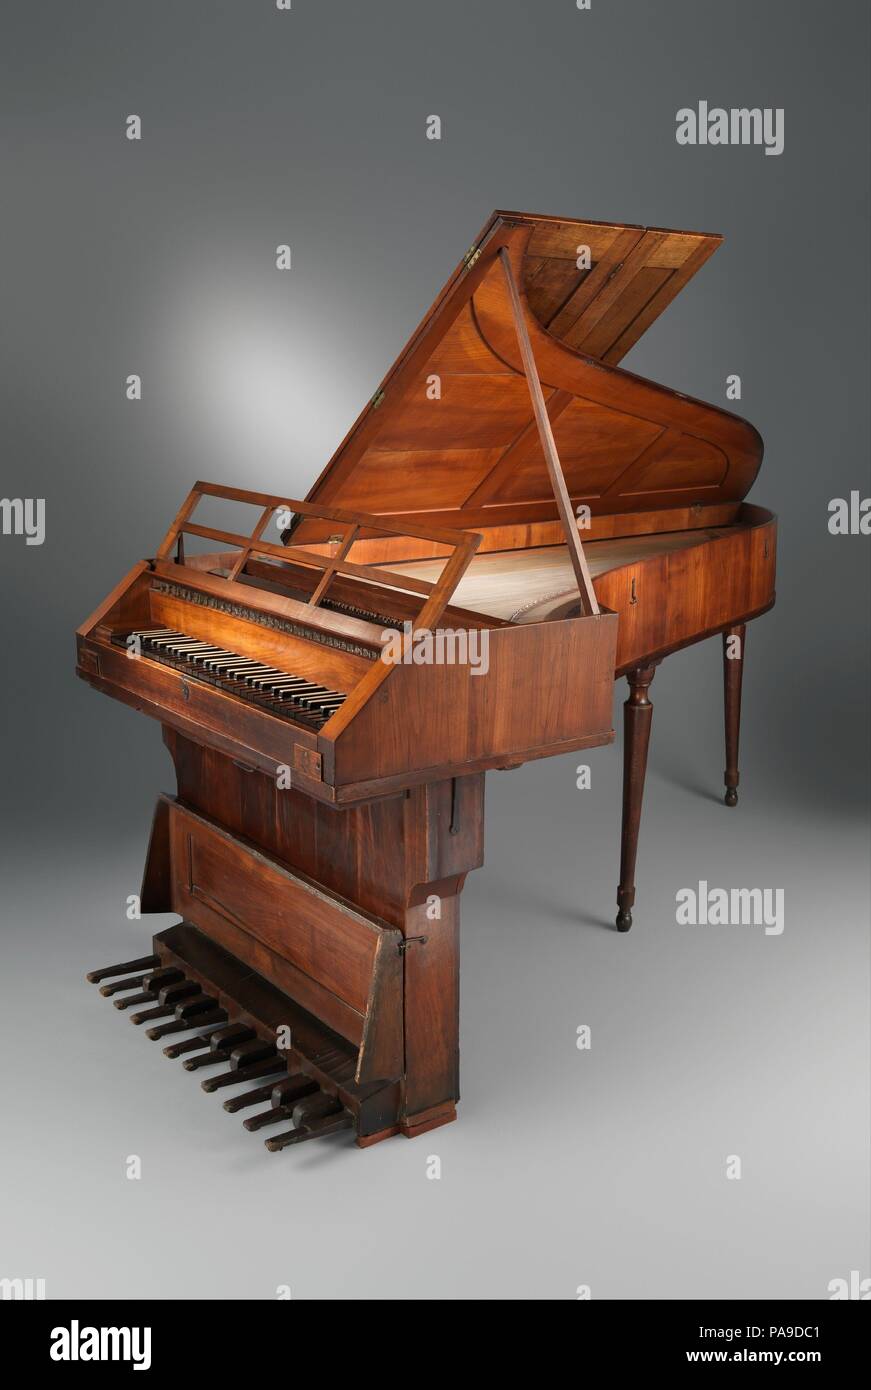 Grand Piano. Kultur: Österreich (Salzburg). Abmessungen: 36×15/16×40 3/16  83 7/16 in. (93,8 × 102 × 212 cm) Höhe (insgesamt): 36 15/16 in. (93,8 cm)  Breite (der Fall, parallel zur Tastatur): 40 3/16